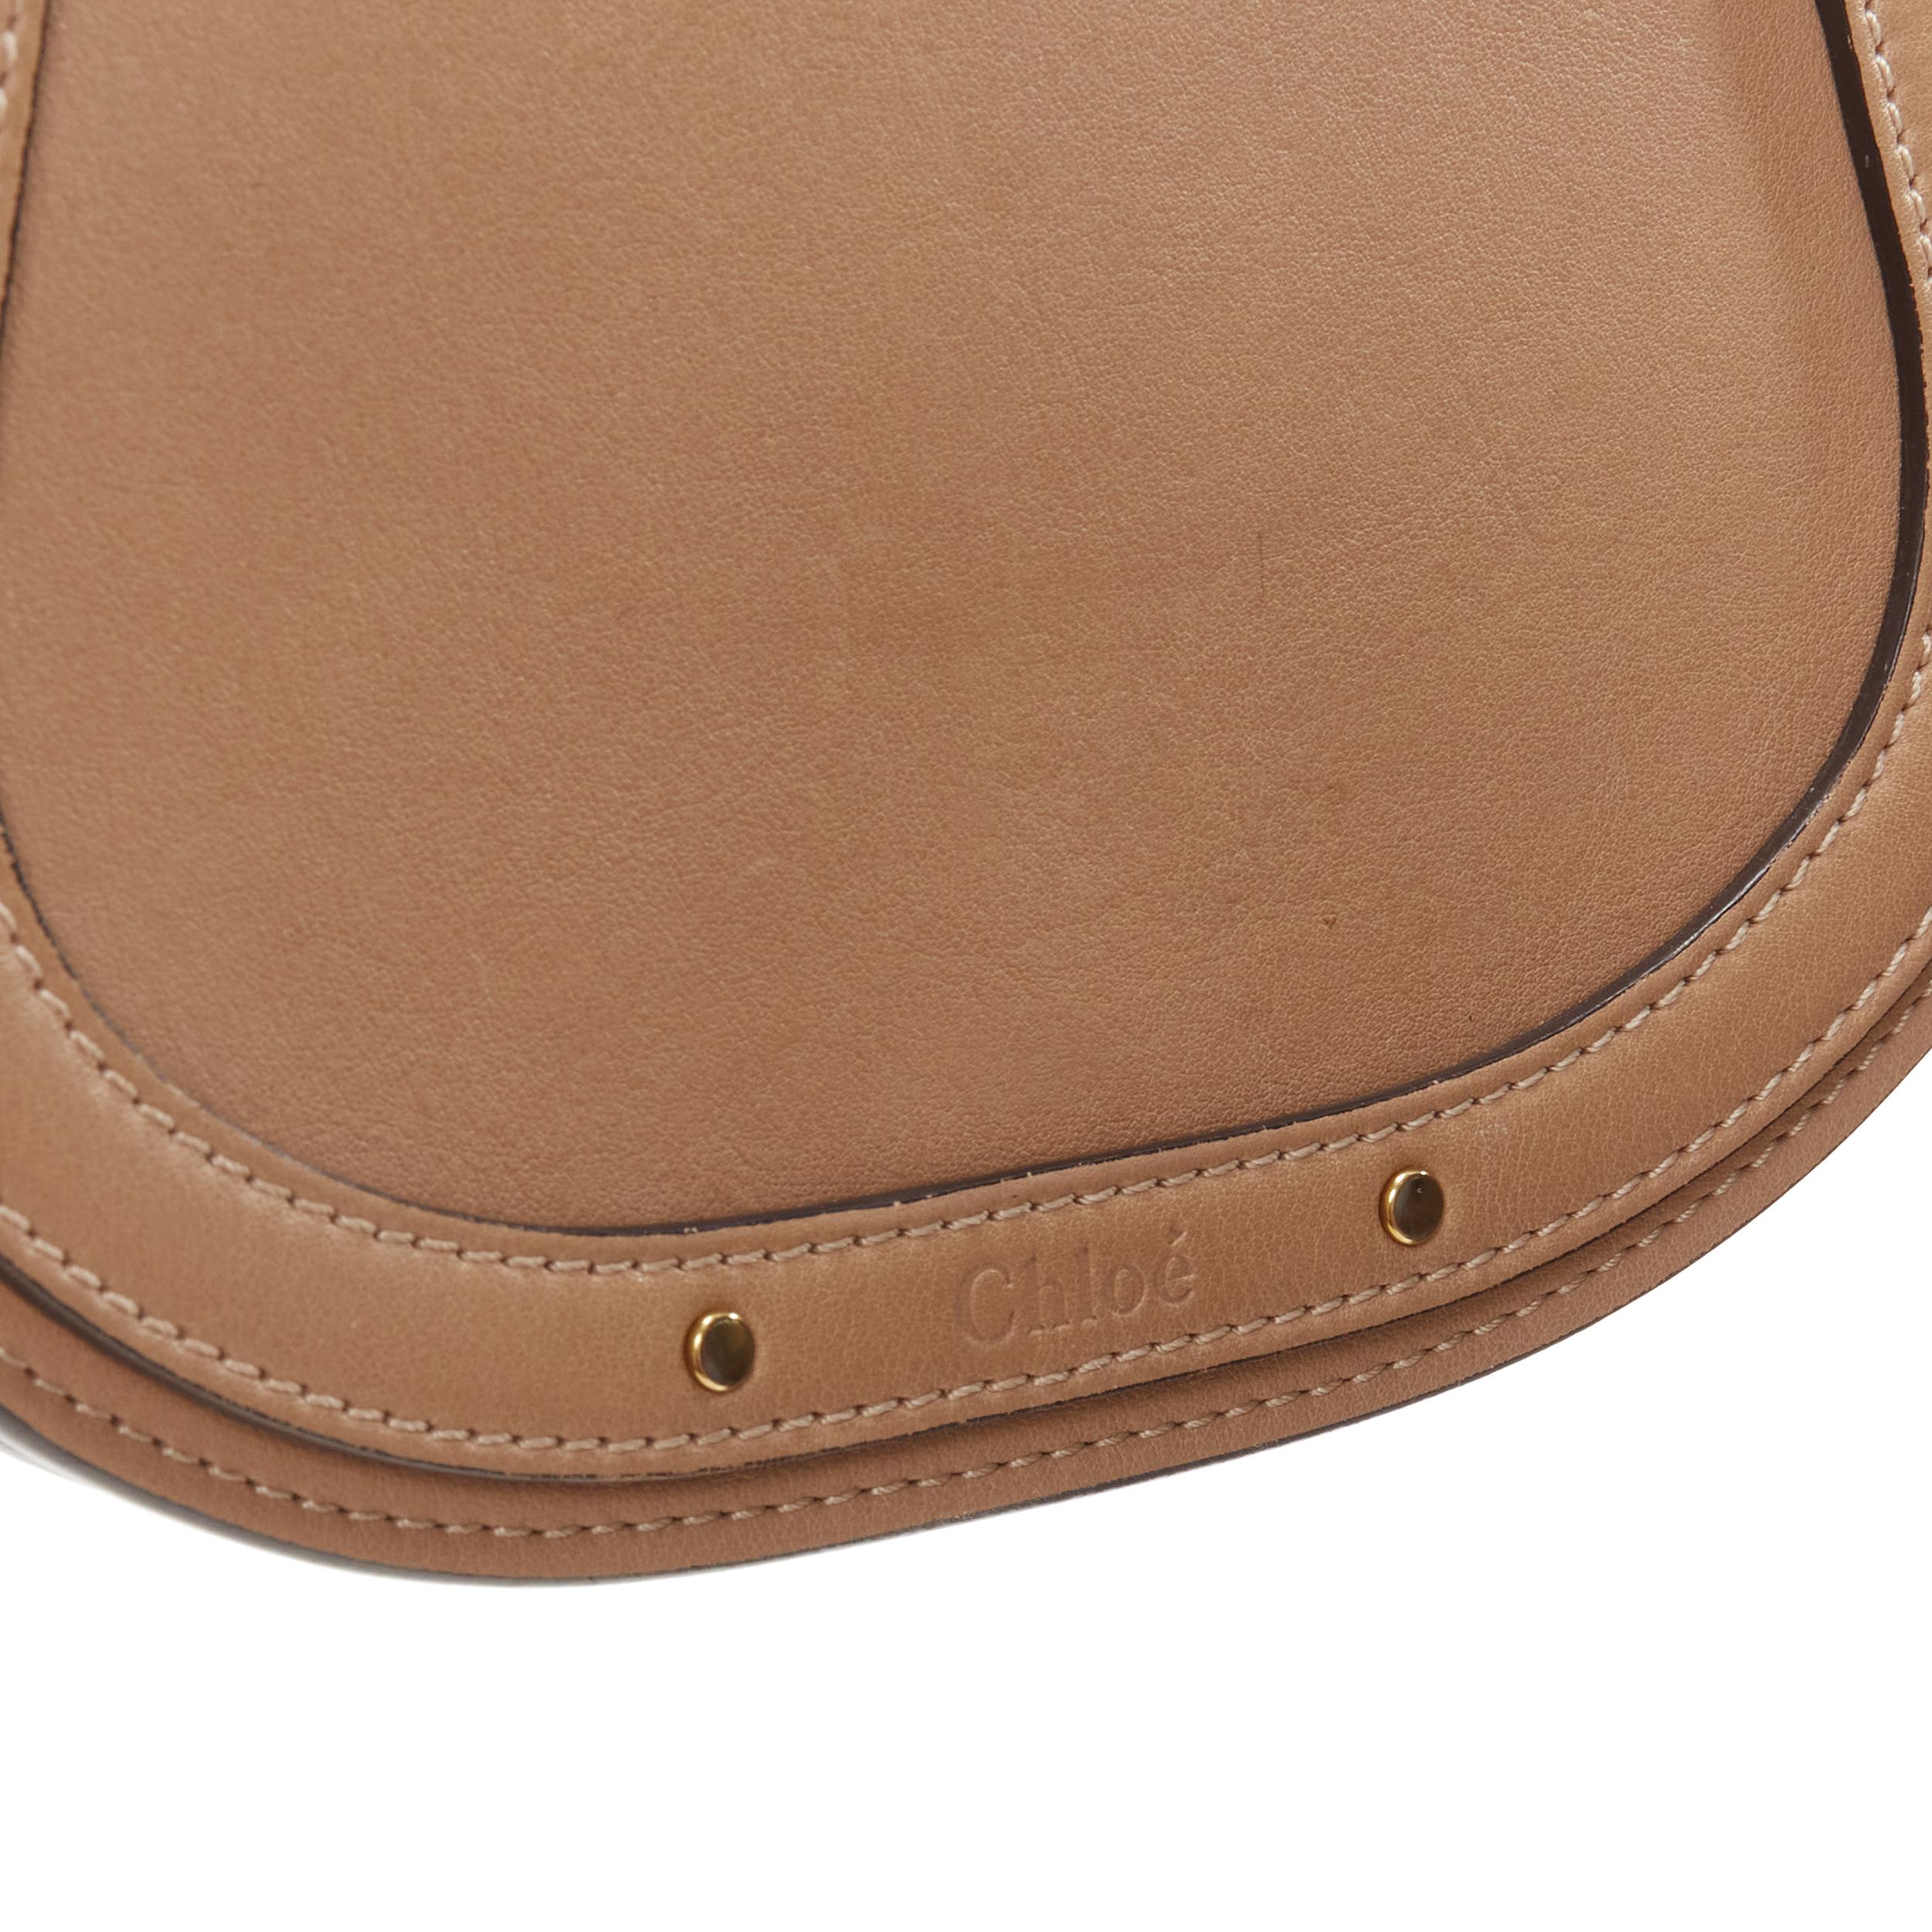 Women's CHLOE Medium Nile gold bangle bracelet handle taupe leather saddle bag For Sale